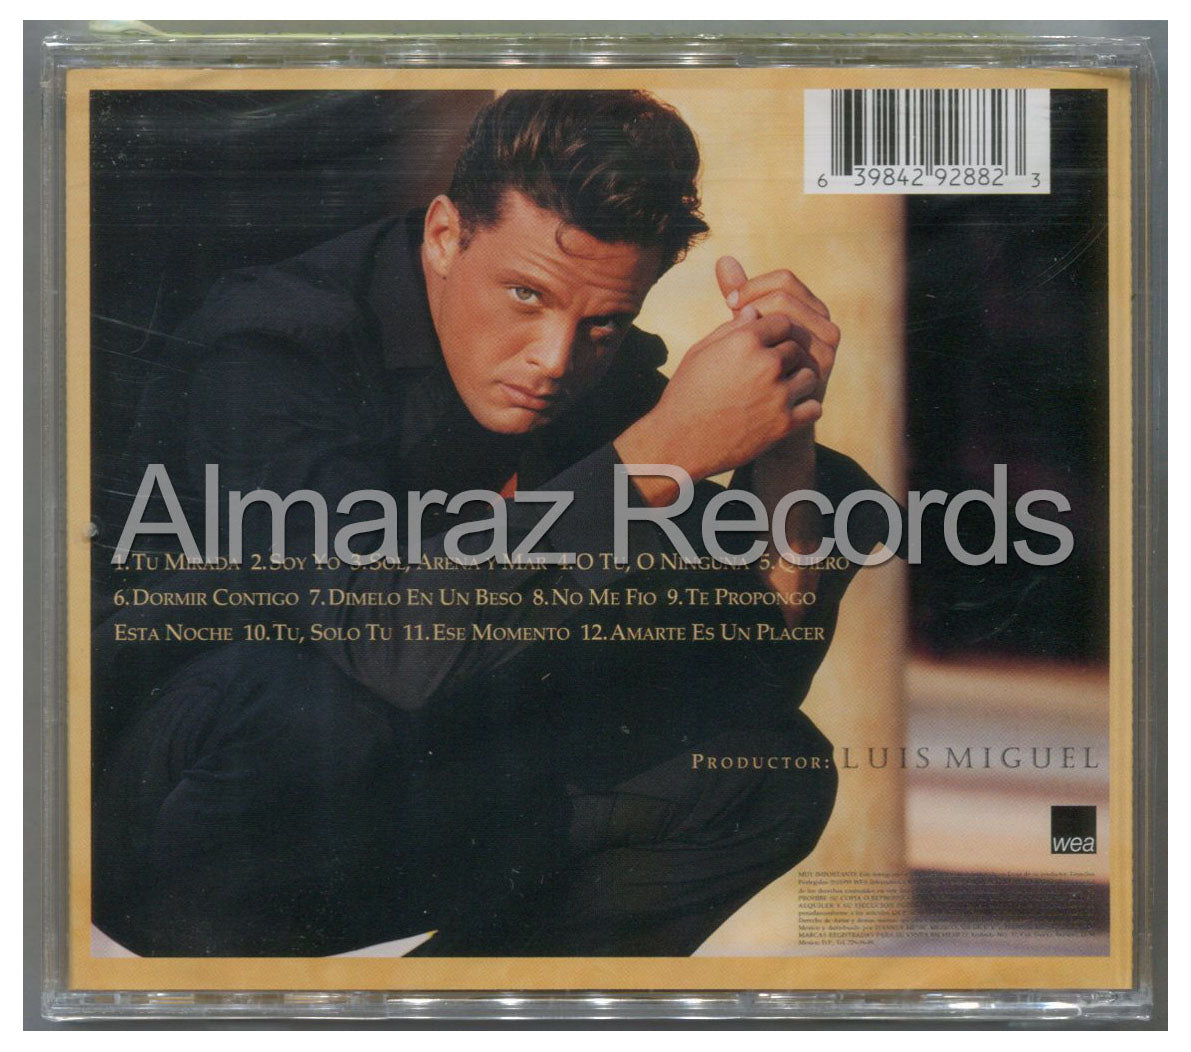 Luis Miguel Amarte Es Un Placer CD